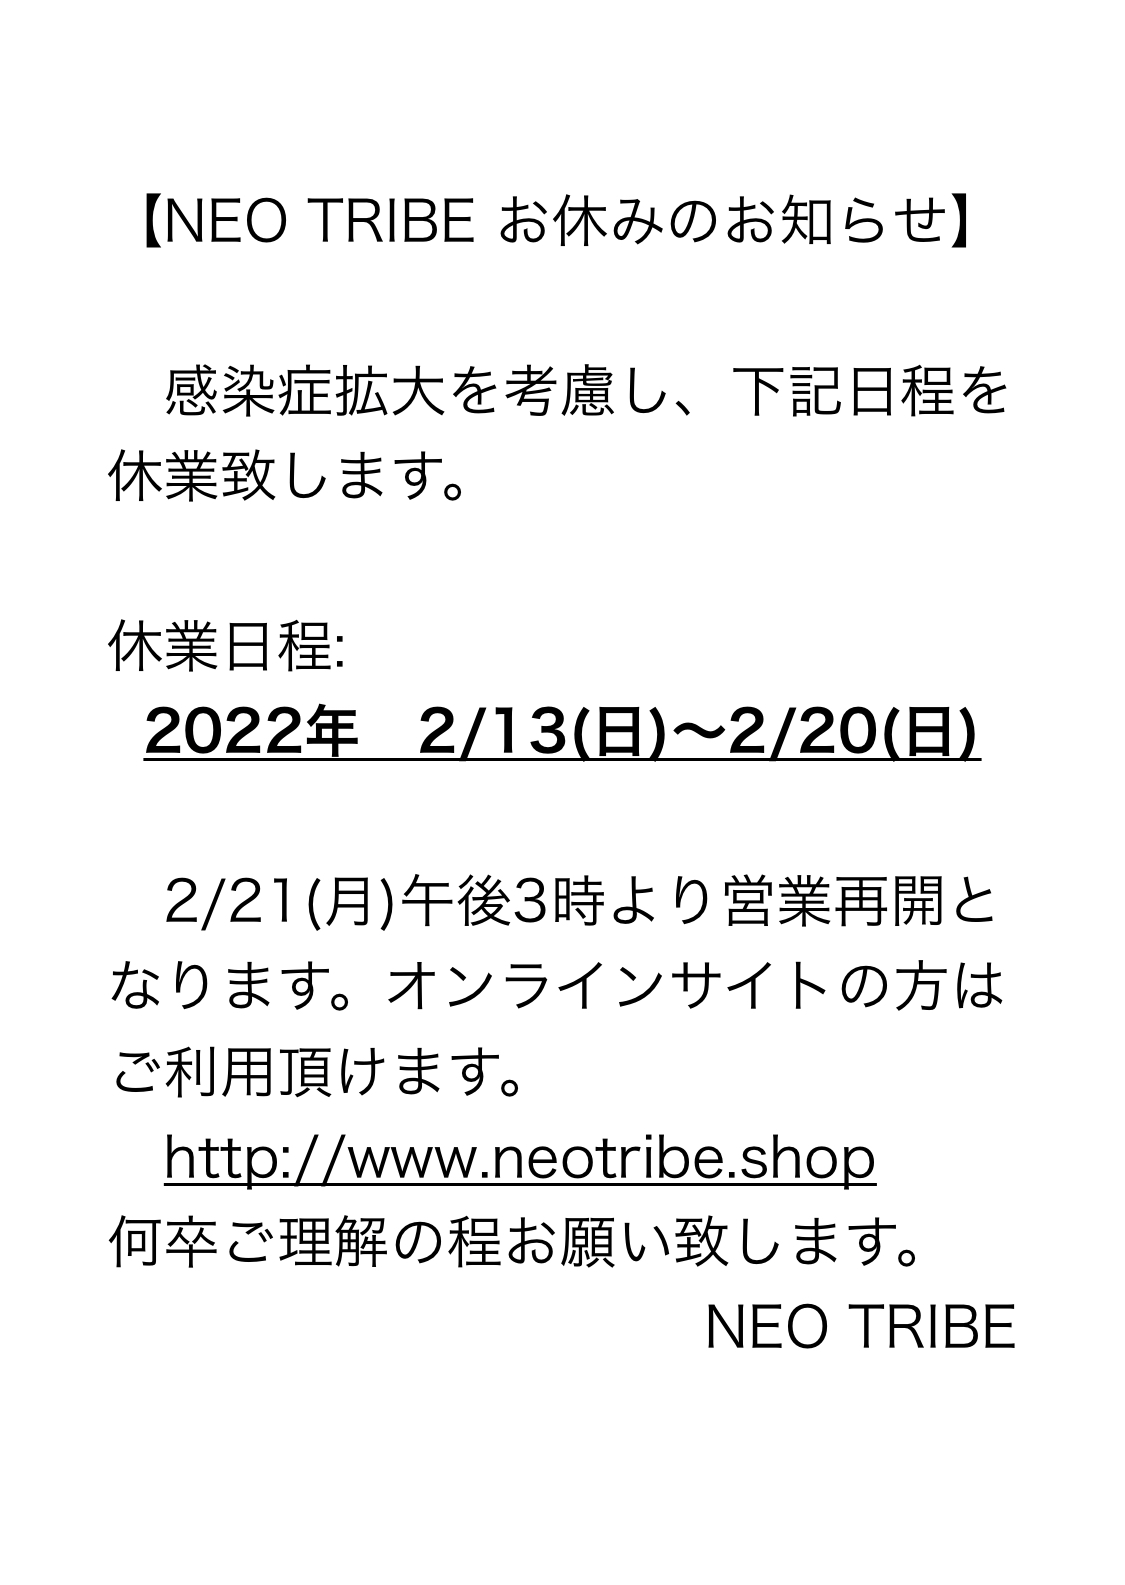 臨時休業(2022.2/13〜2/20)のお知らせ